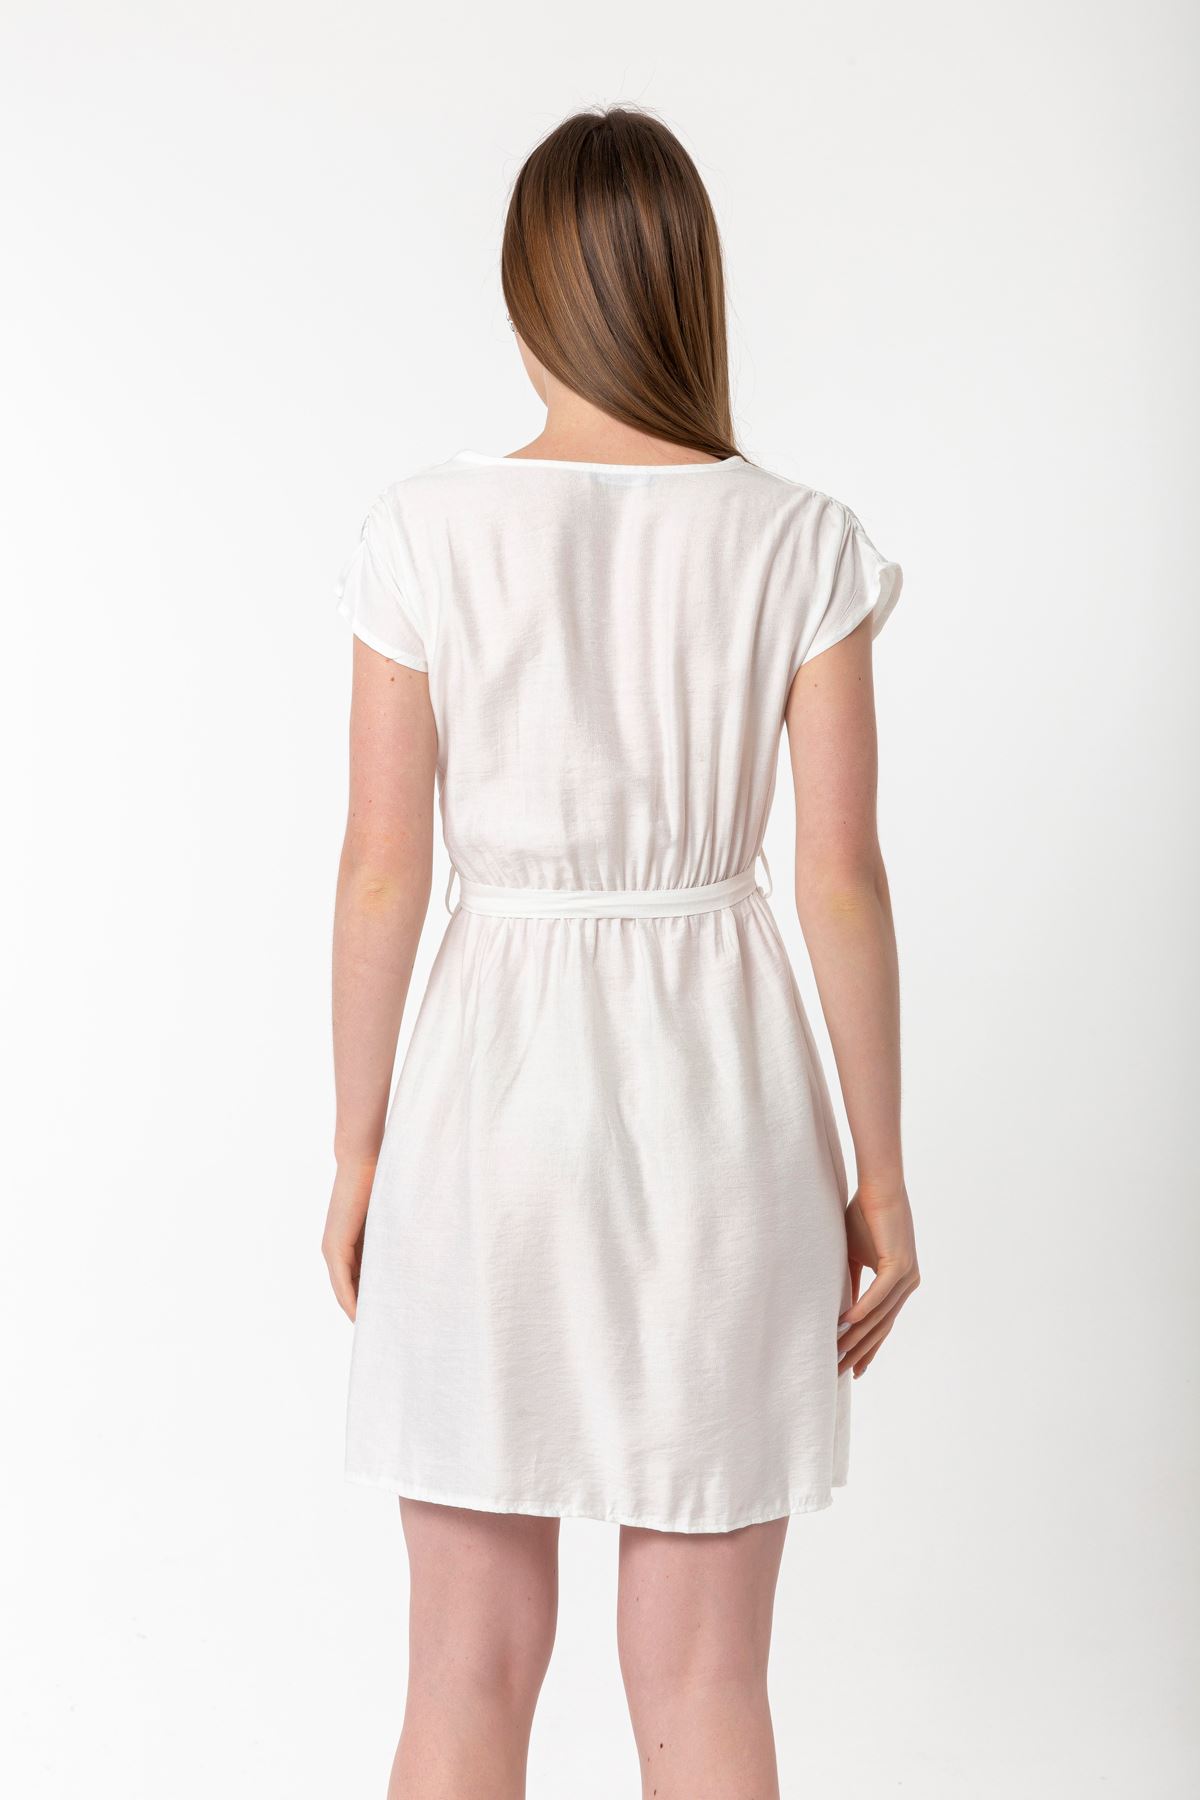 Linen Fabric Short Sleeve V-Neck Comfy Fit Women Dress - Ecru